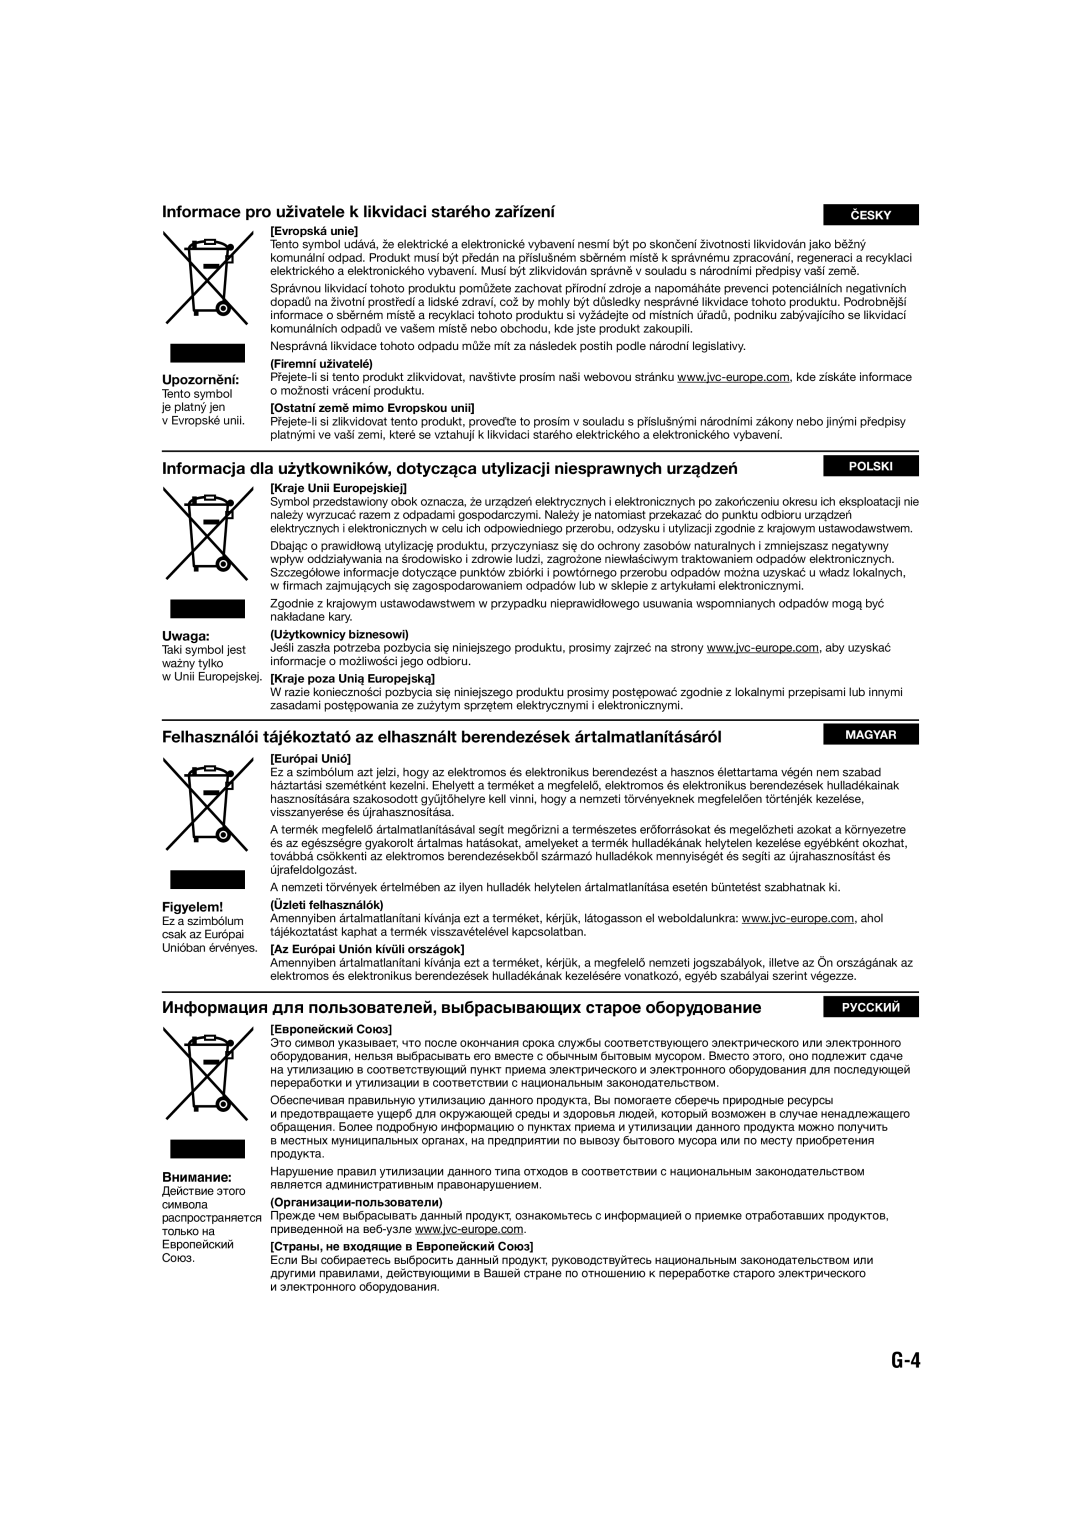 JVC UX-S10 manual Upozornění, Uwaga, Figyelem, Внимание 